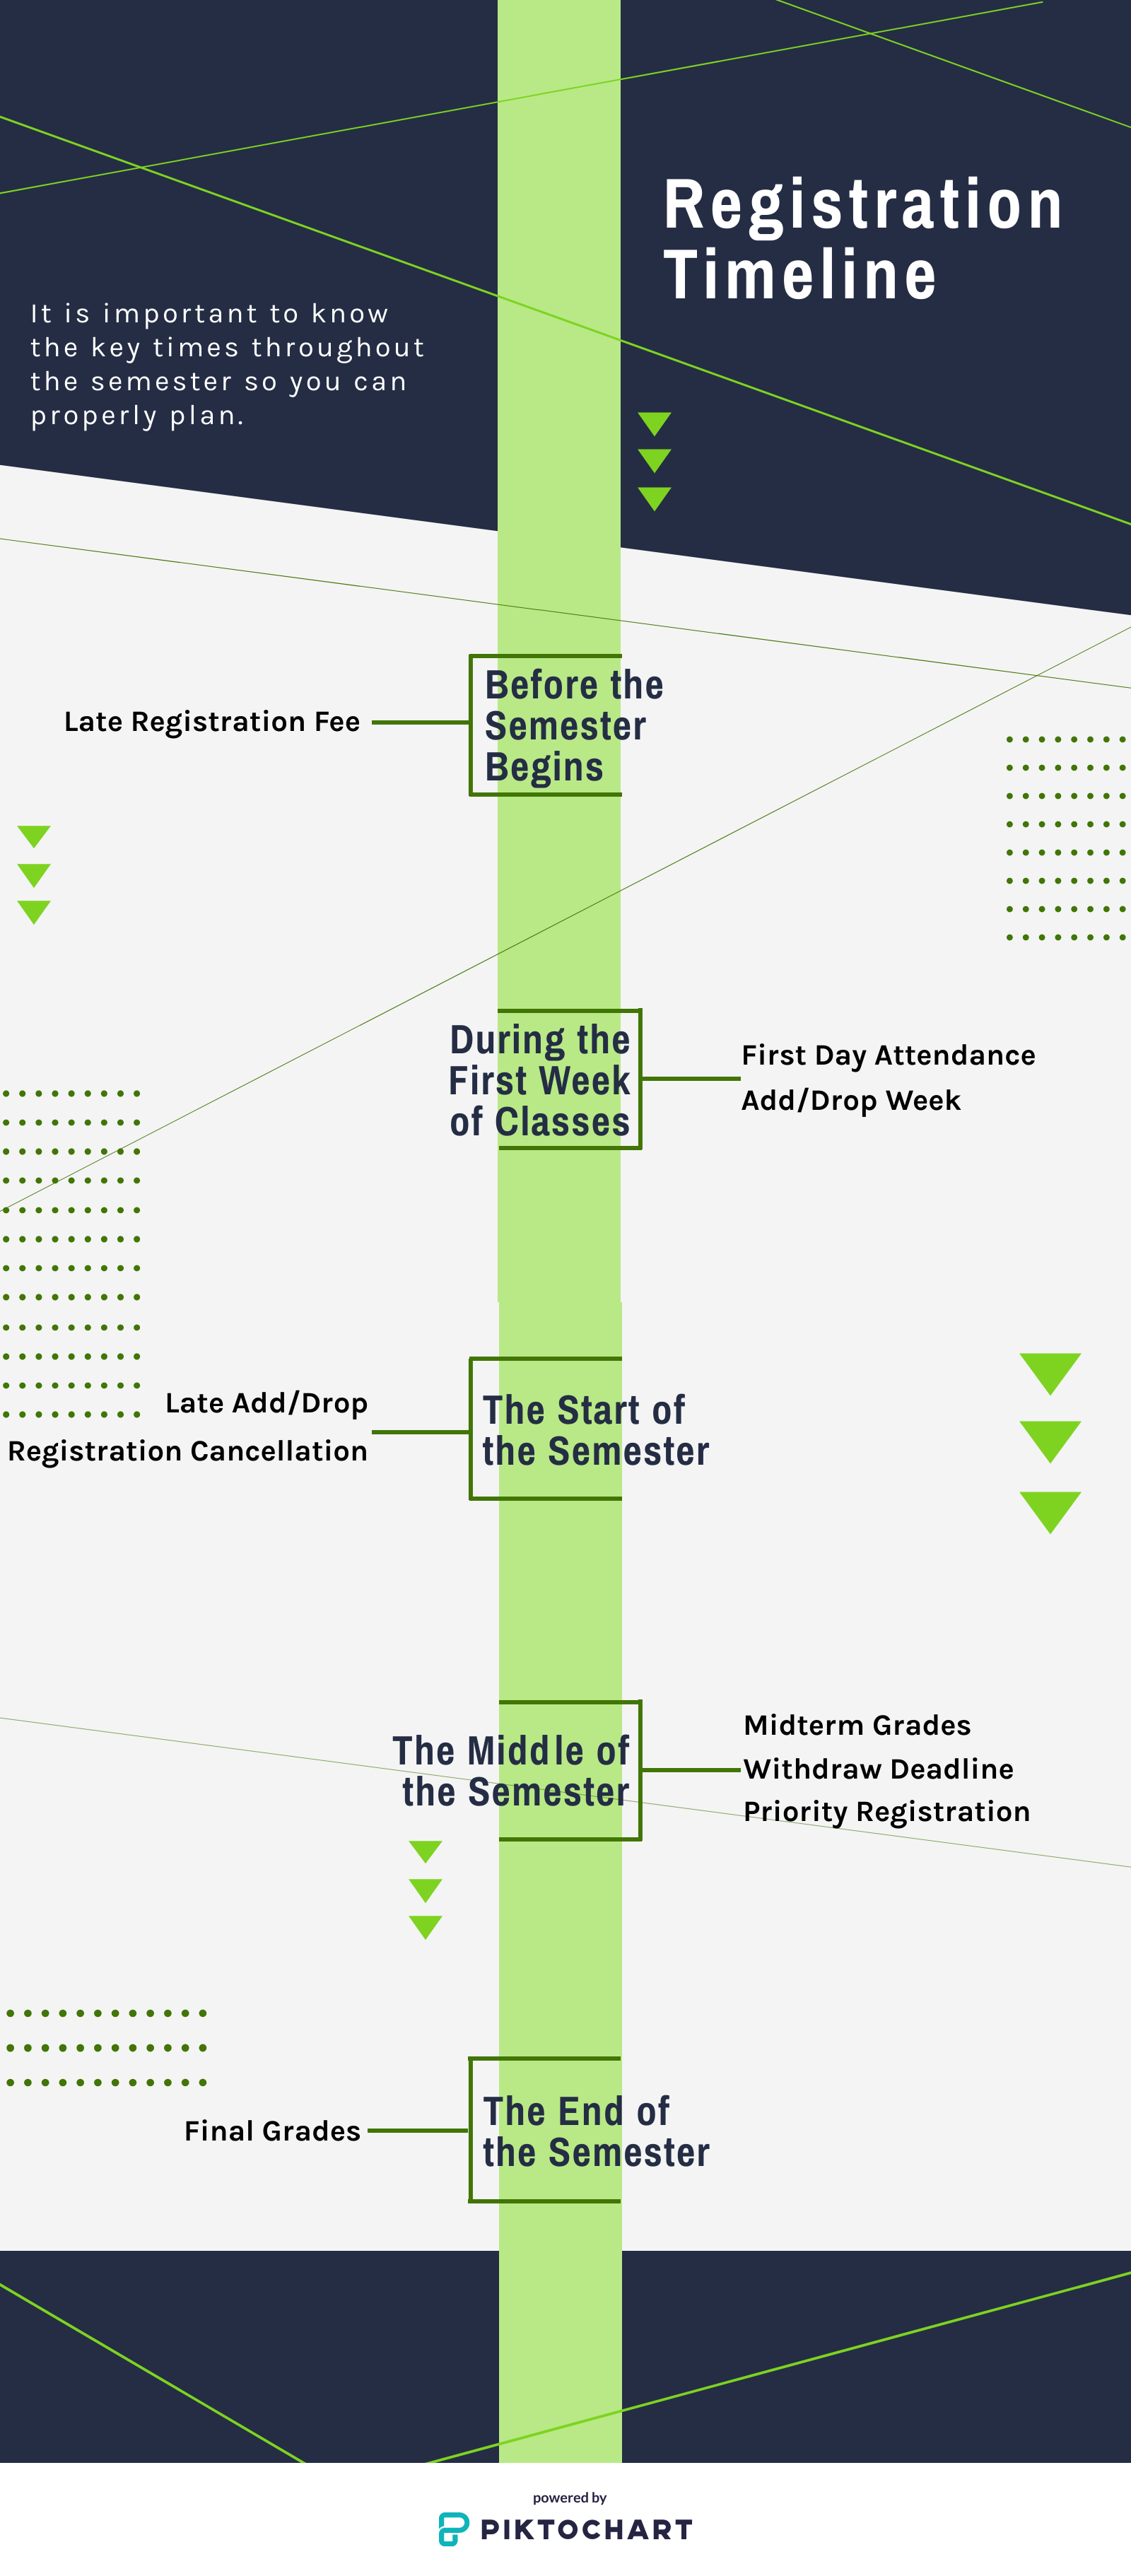 Registration Timeline Infographic